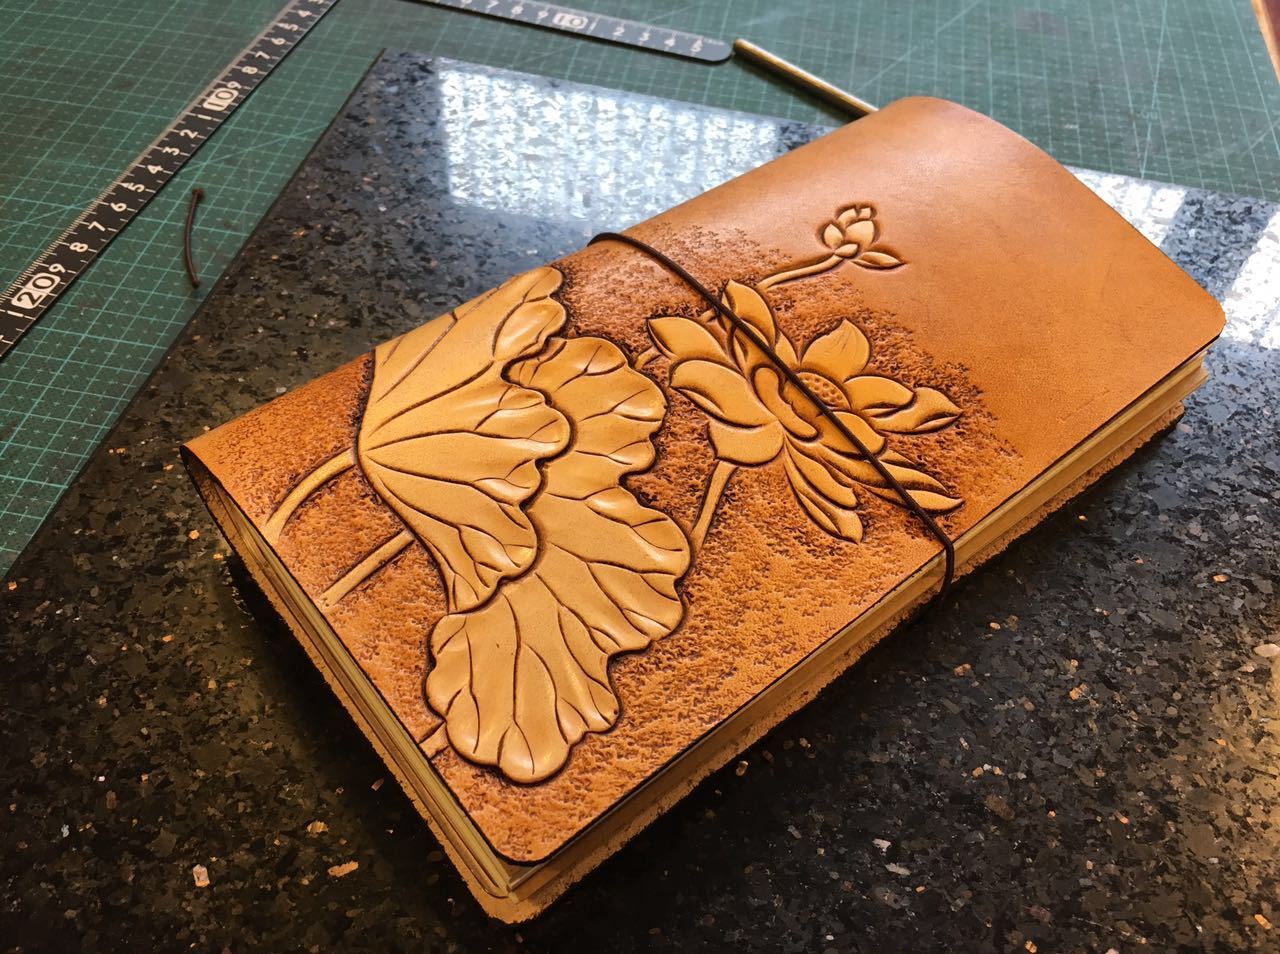 荷花旅行笔记本是一款容易上手又出效果的皮雕作品。平时可以经常使用它。
